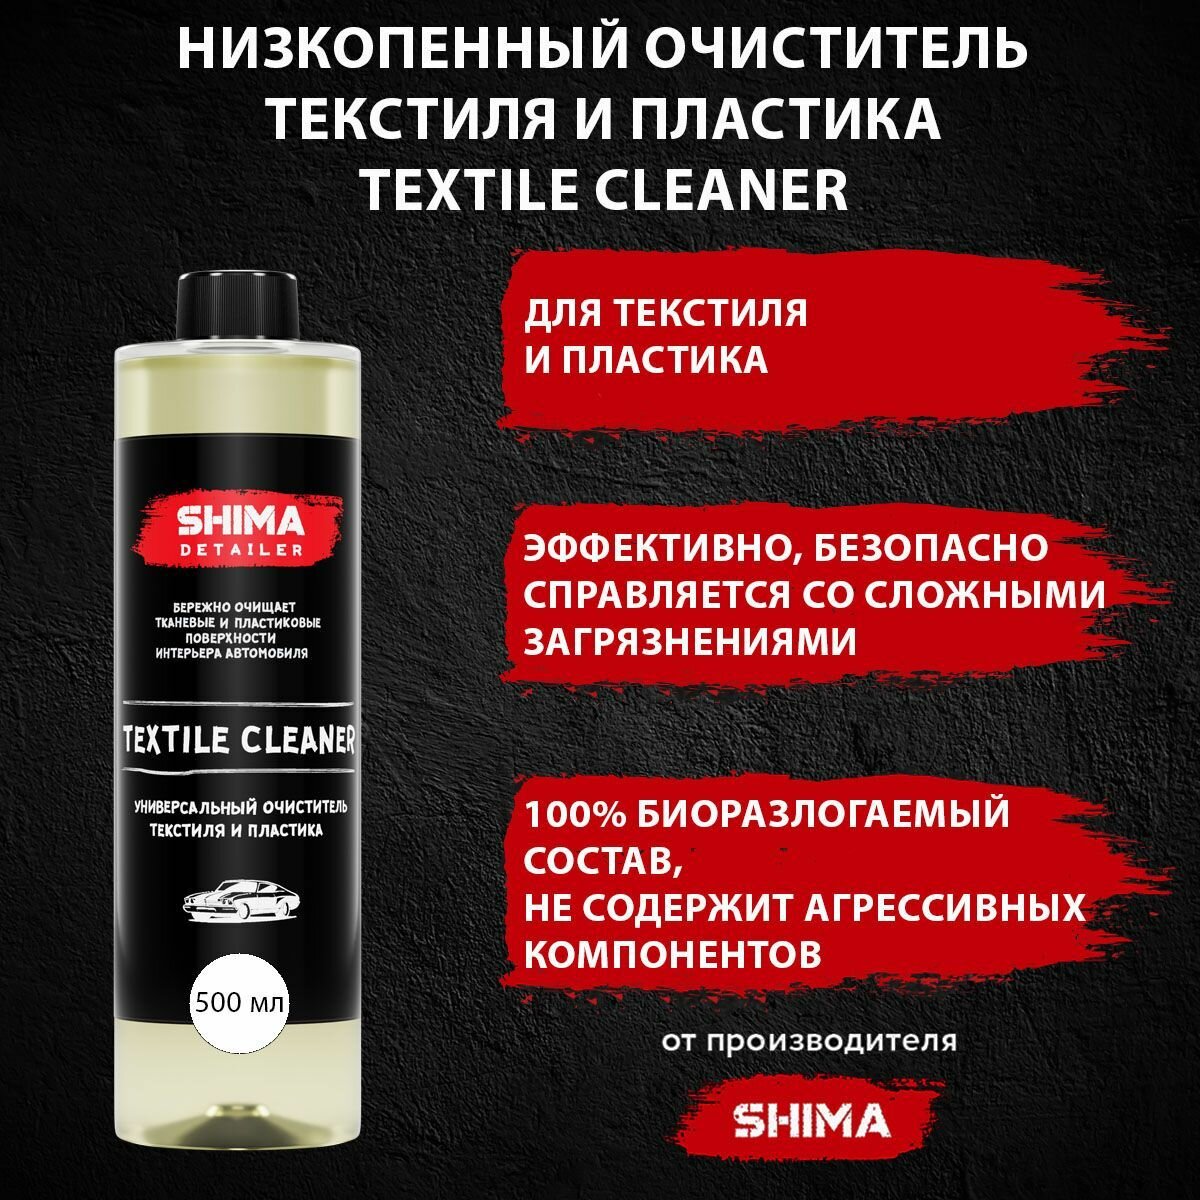 Высокоэффективный очиститель текстиля SHIMA TEXTILE CLEANER 500 мл